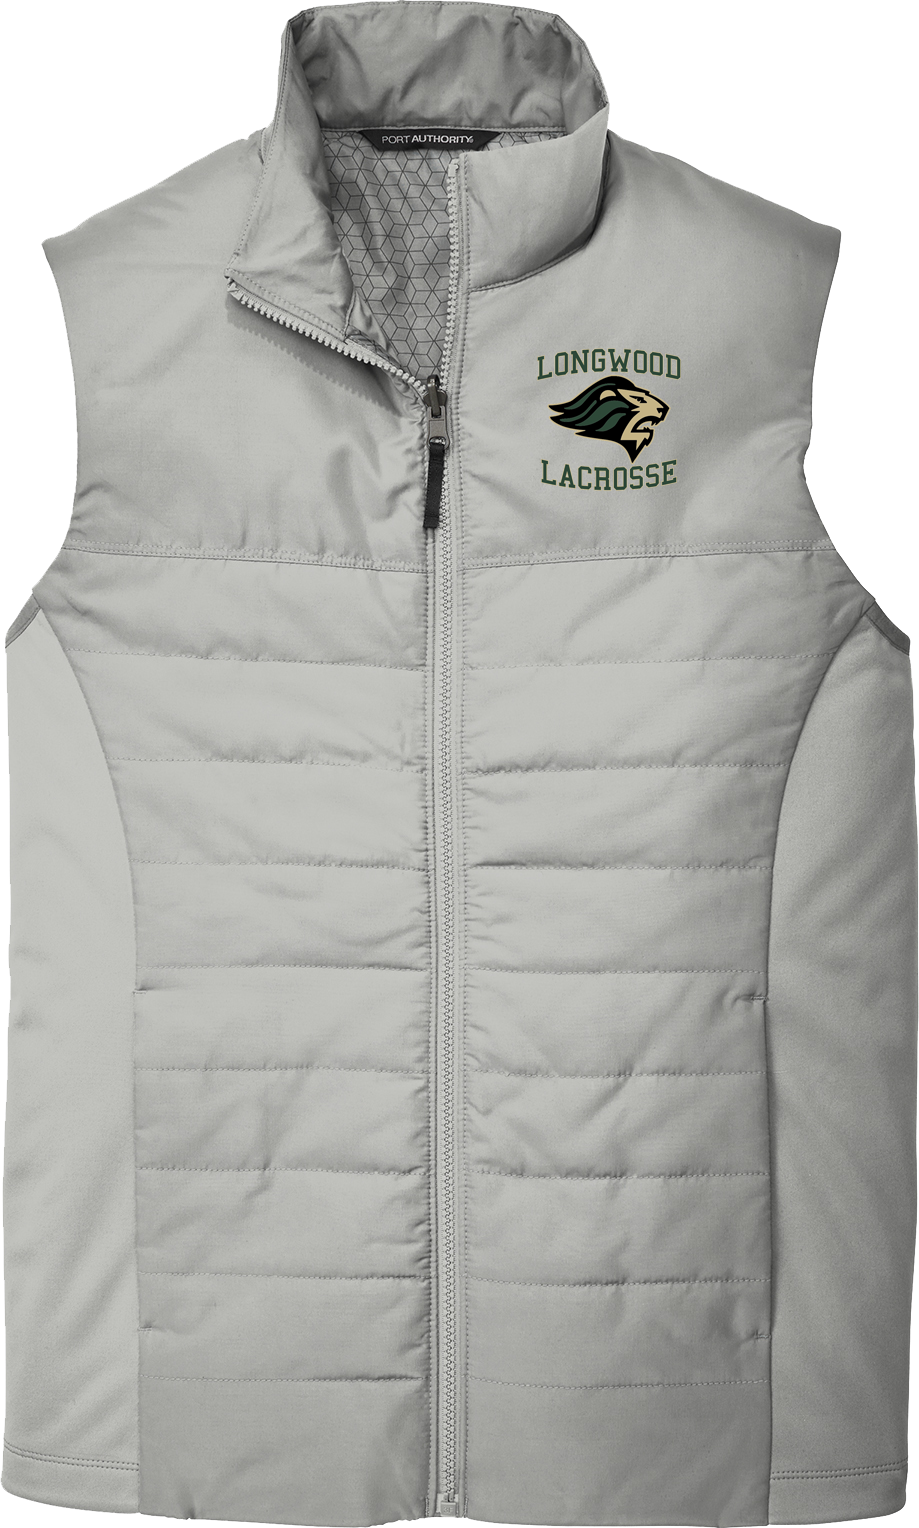 Longwood Lacrosse Grey Vest